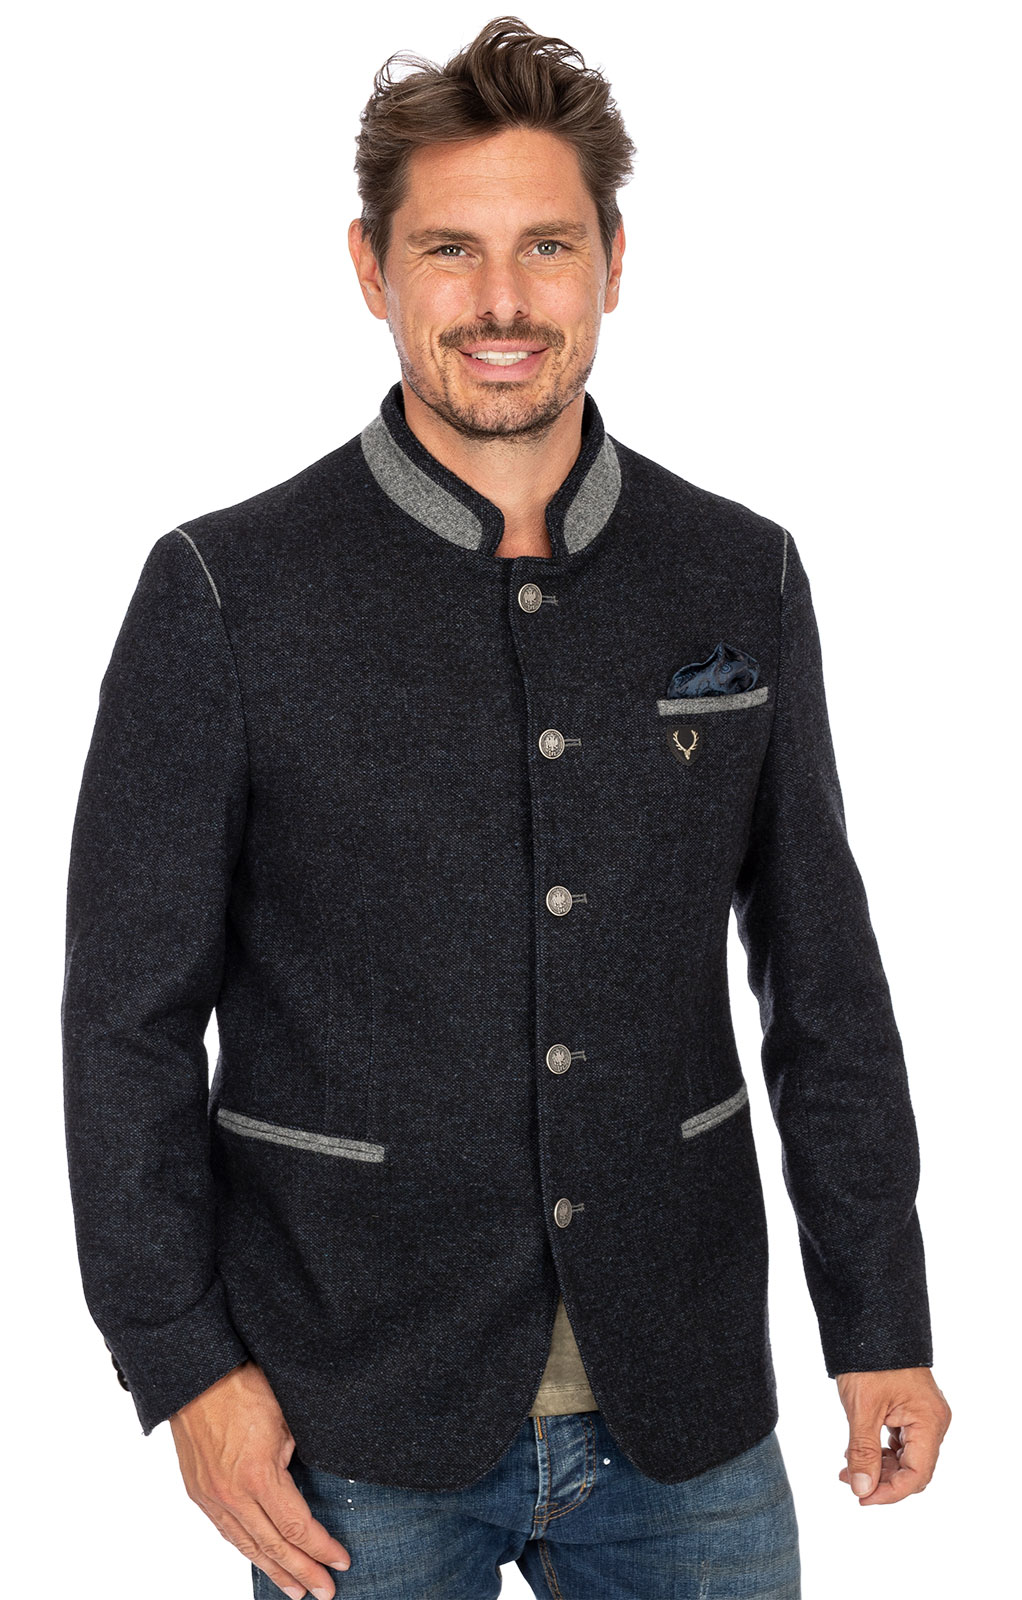 German traditional jacket MARLON dark blue gray von Spieth & Wensky